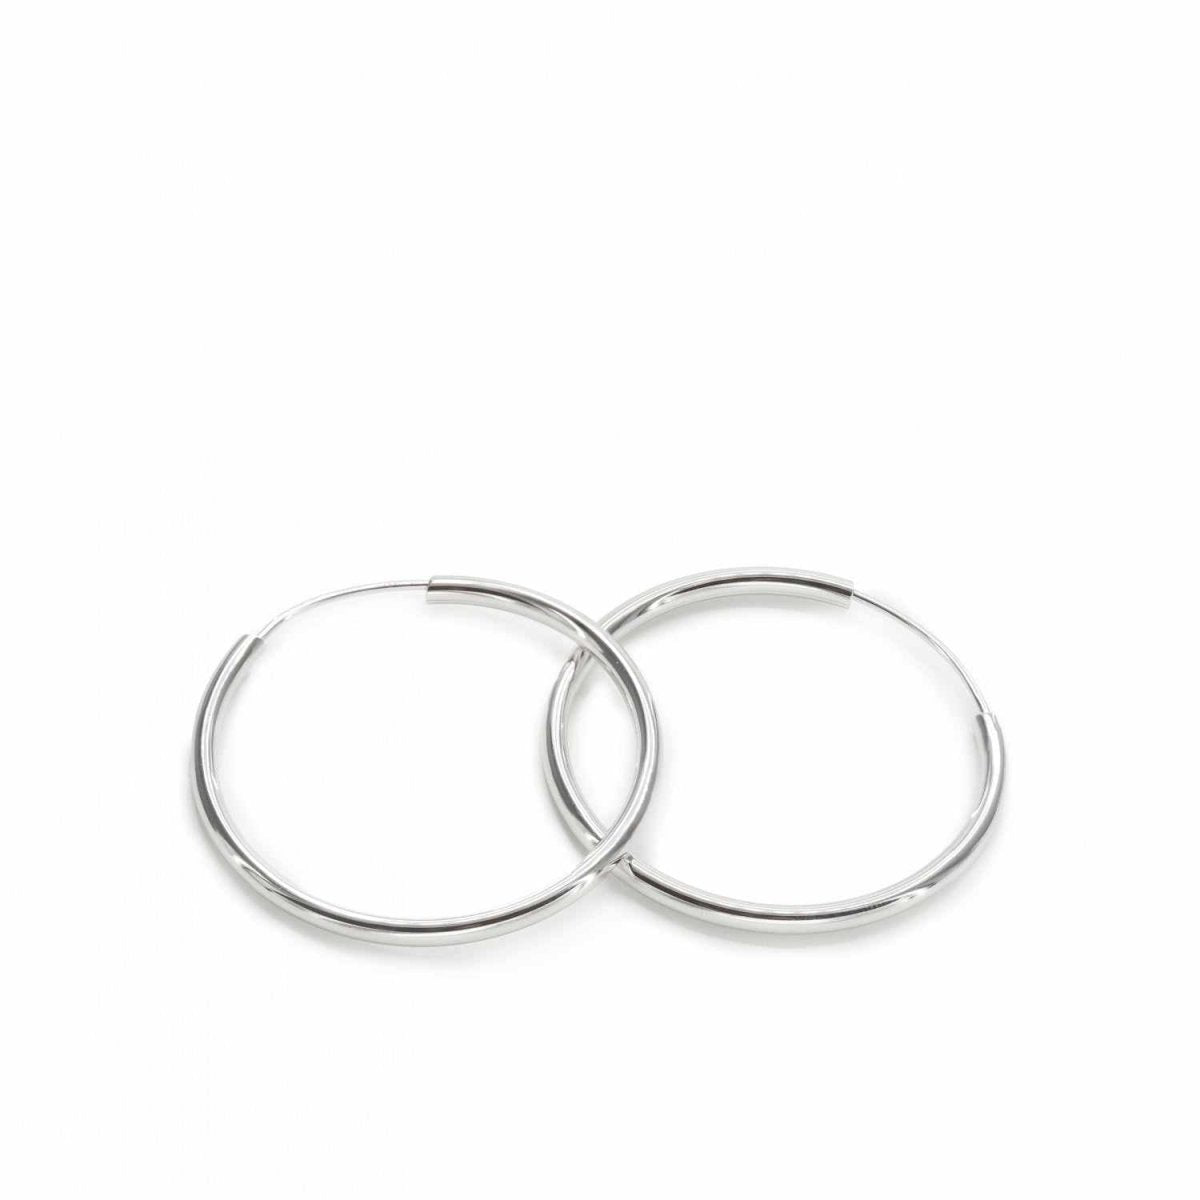 Earrings - Large hoop earrings tubular design with concealed closure